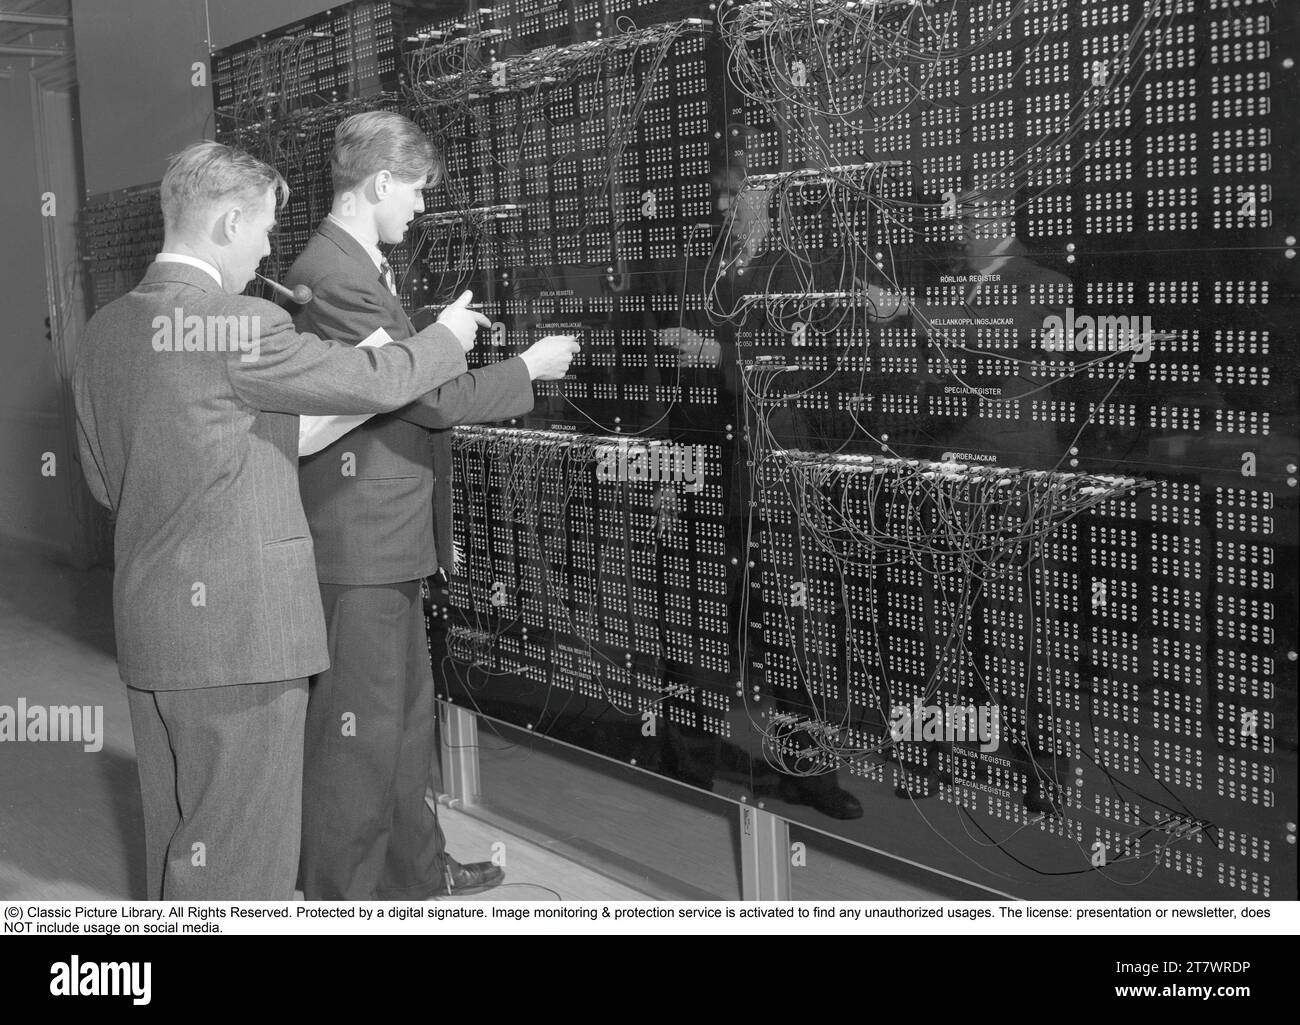 Computer BARK. Calcolatore relè aritmetico binario (automatico)". Un computer elettromeccanico dei primi anni '1950. BARK è stato inaugurato il 28 aprile 1950, è stato in funzione fino al luglio 1955 ha potuto eseguire l'aggiunta in 150 ms e la moltiplicazione in 250 ms. Aveva una memoria con 50 registri e 100 costanti. In seguito è stato ampliato per raddoppiare la memoria. Howard Aiken (fisico americano, pioniere del computing, progettista concettuale IBM) ha dichiarato, in riferimento a BARK, "questo è il primo computer che ho visto fuori Harvard che funziona davvero". La costruzione del computer di CORTECCIA fu guidata da Conny Palm, un elettore Foto Stock